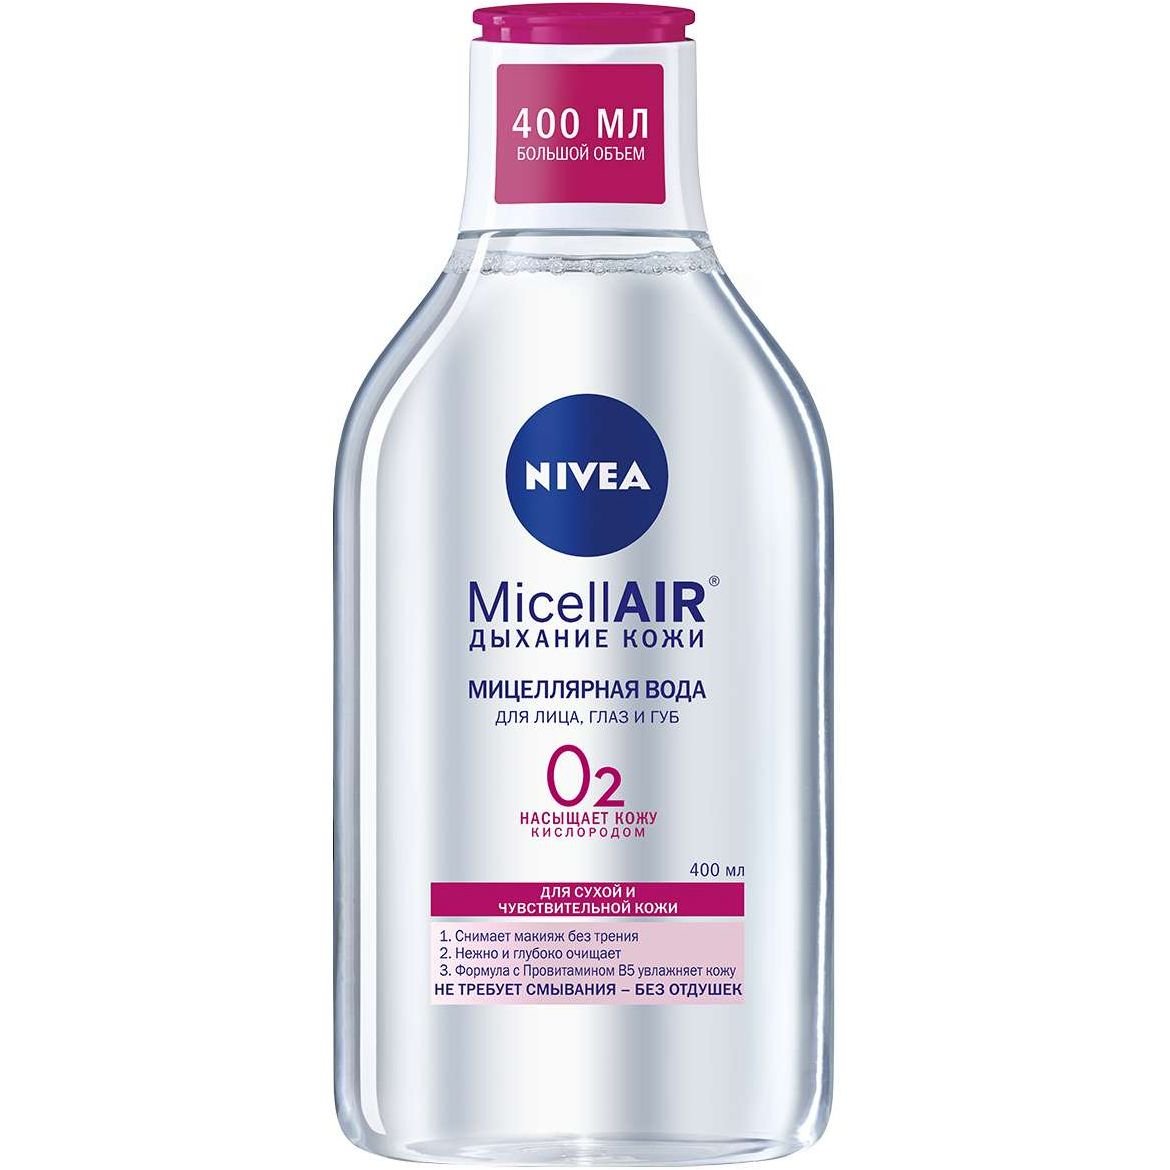 Мицелярная вода Nivea MicellAIR Дыхание кожи, для сухой и чувствительной кожи, 400 мл - фото 1